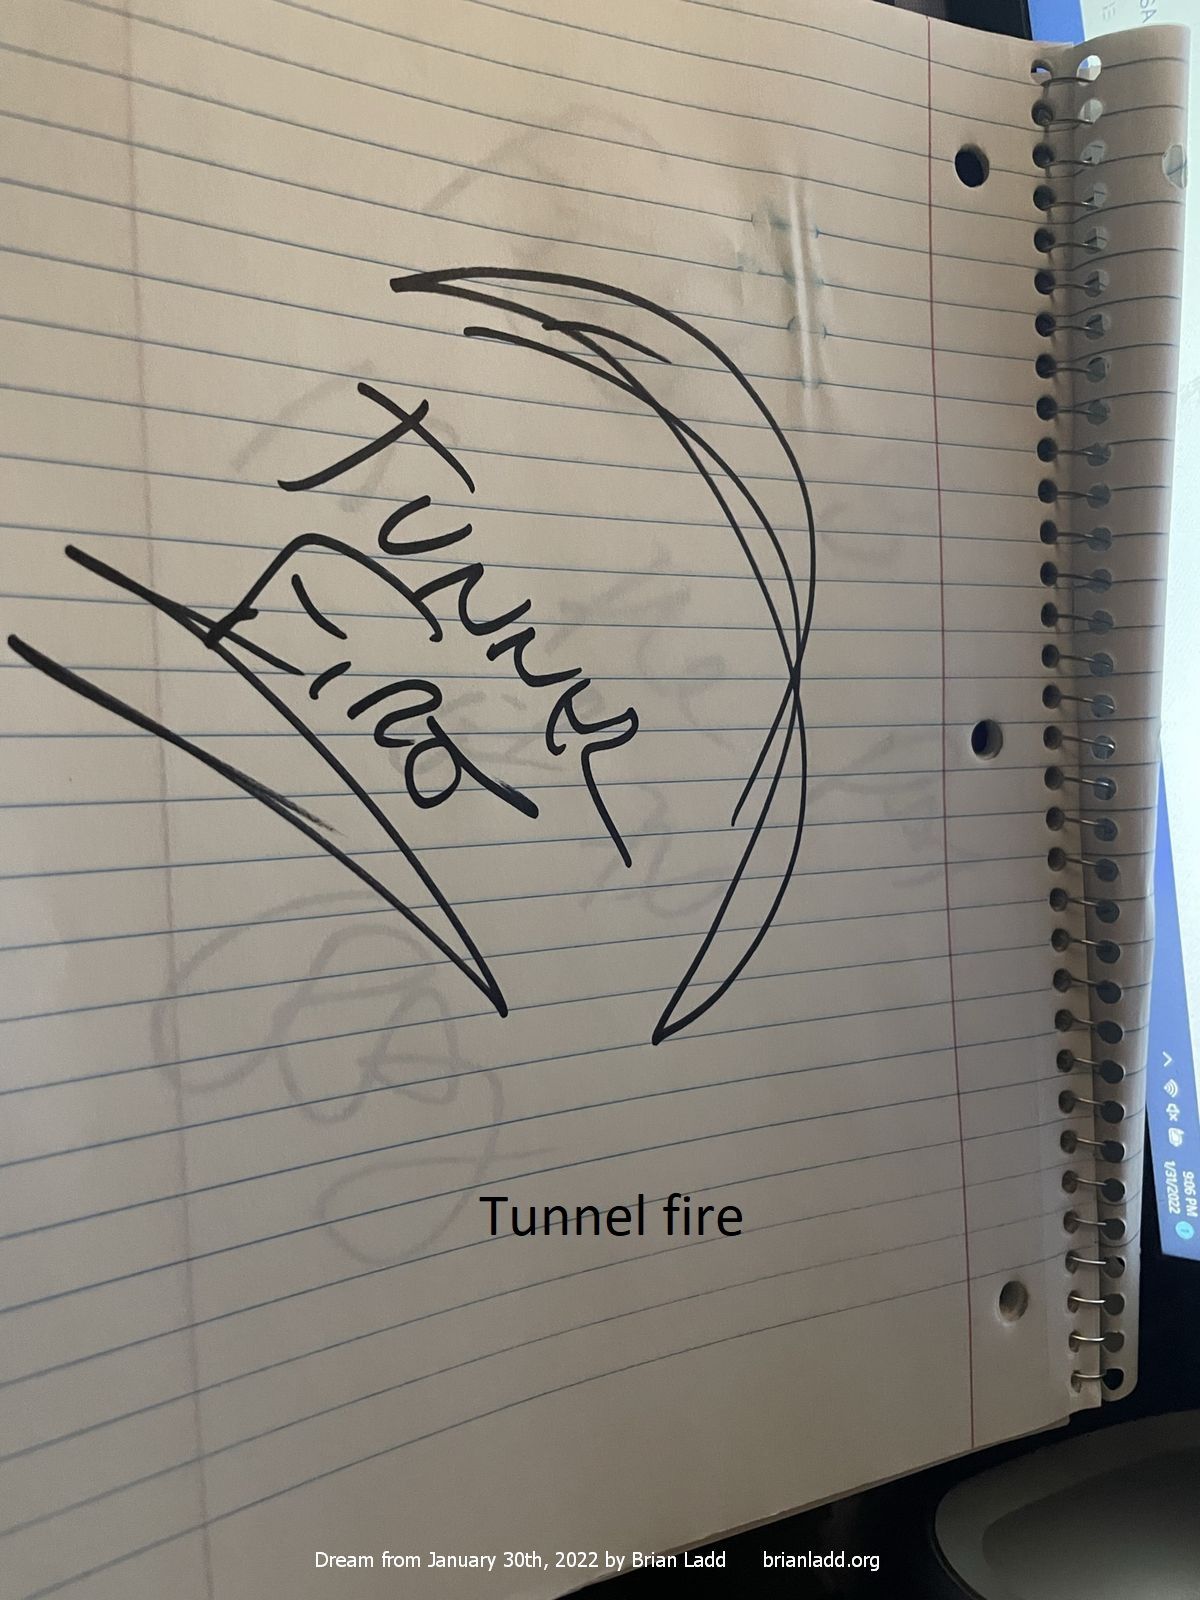 30 jan 2022 2  Tunnel fire...
Tunnel fire.
